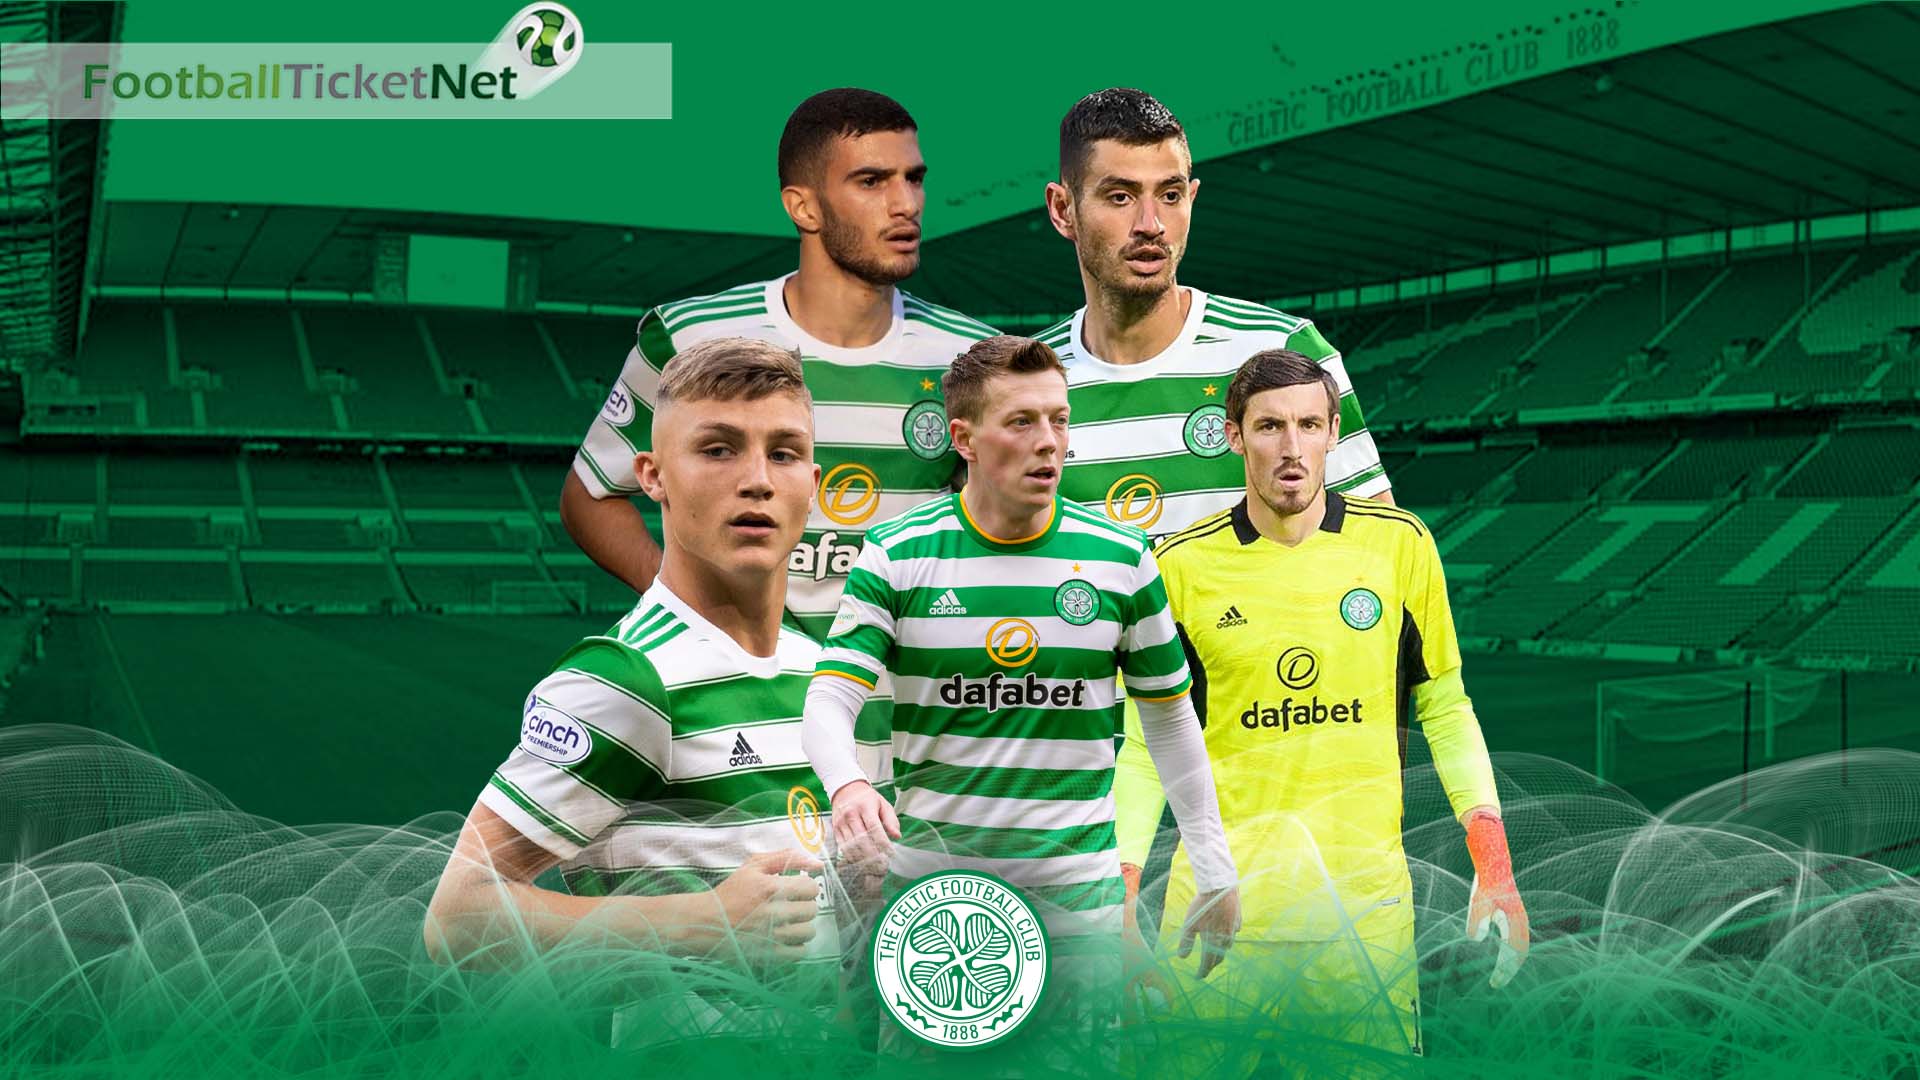 Buy Celtic FC Tickets 2023/24 Football Ticket Net